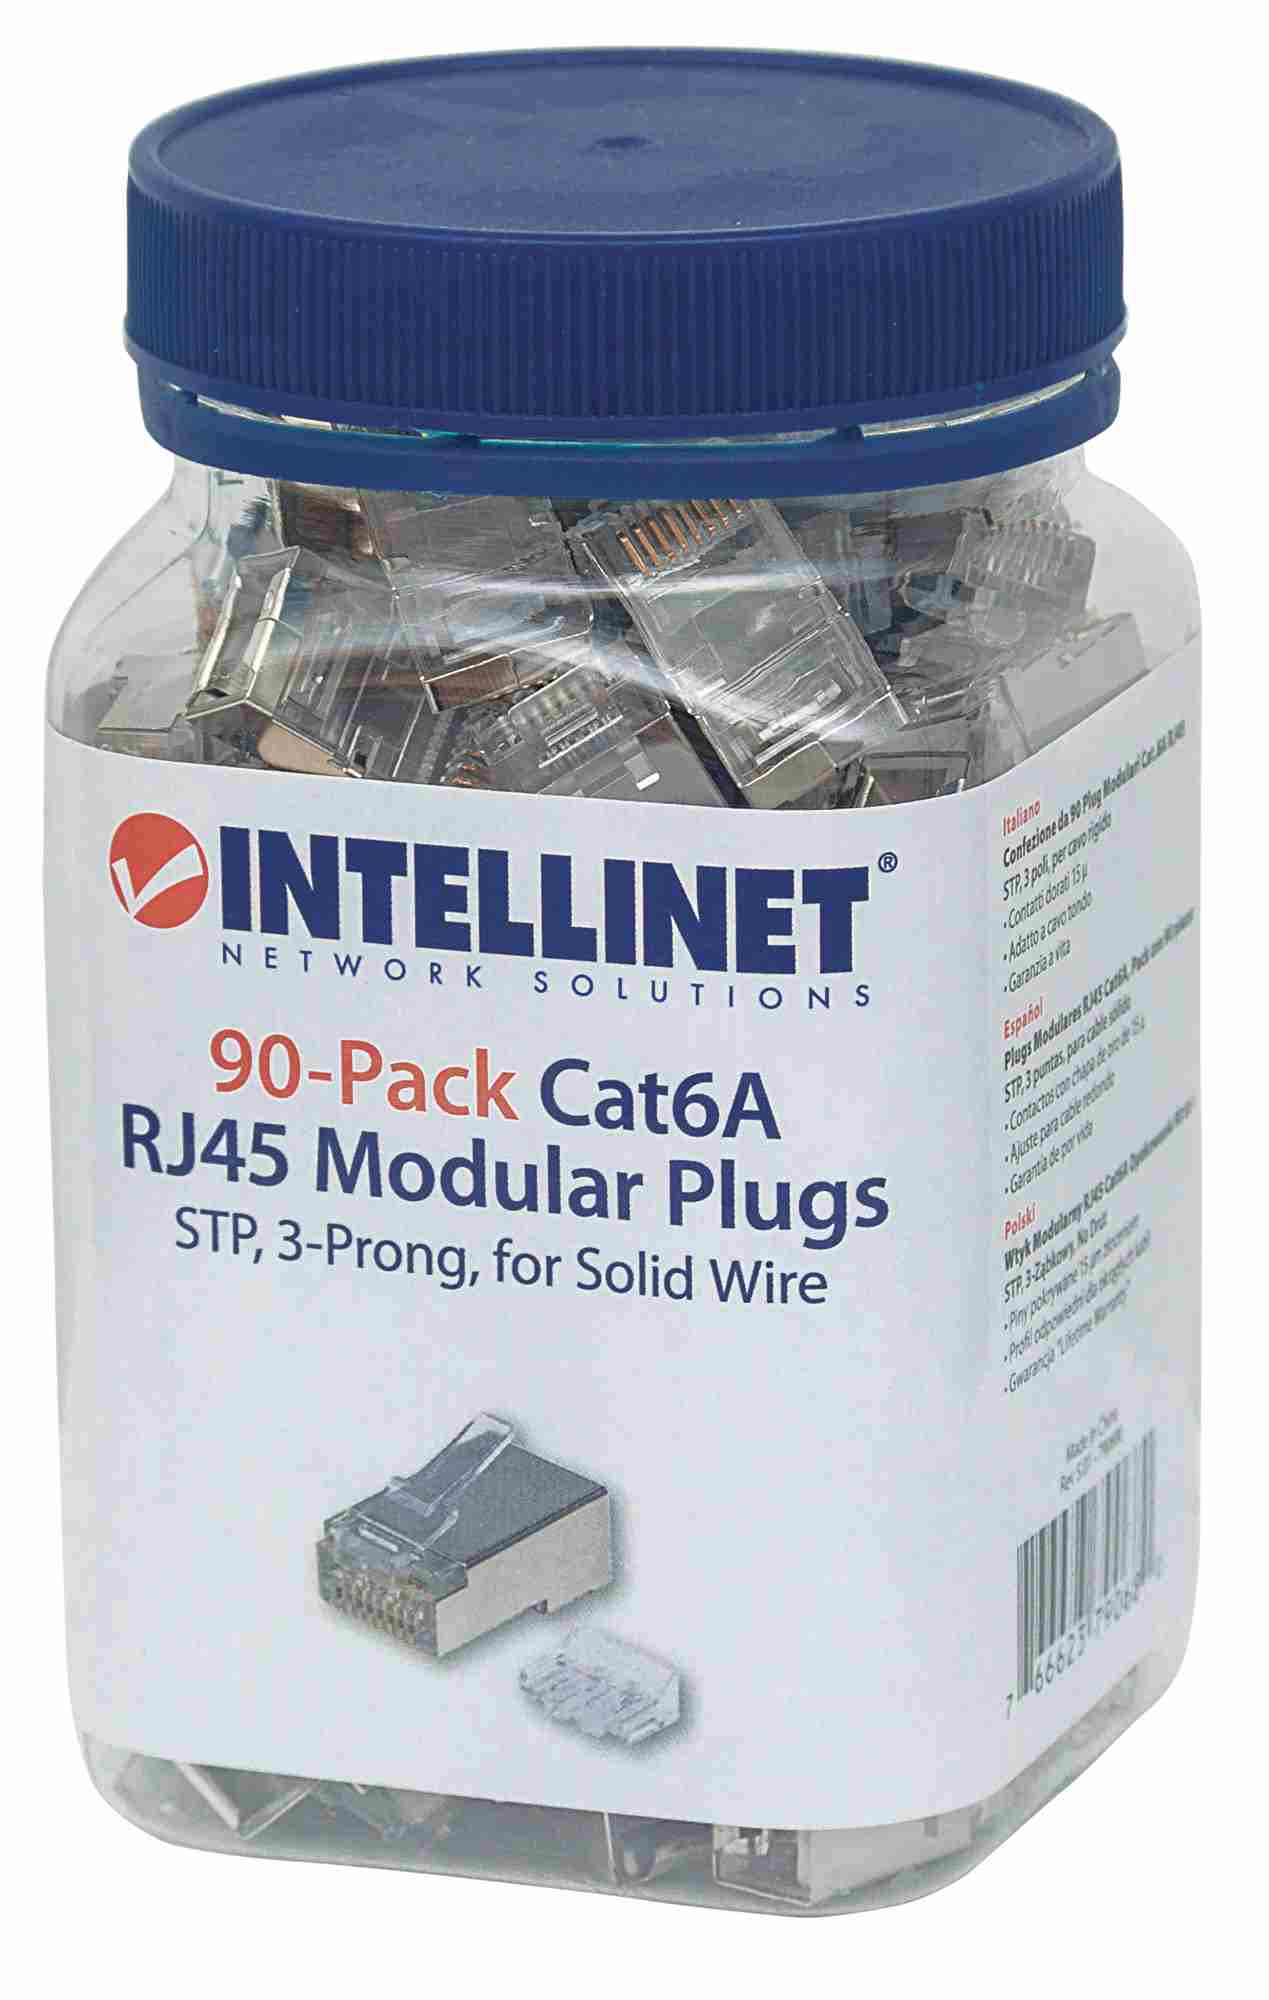 Intellinet konektor RJ45,  Cat6A,  tienený STP,  15µ,  drôt,  90 ks v balení3 